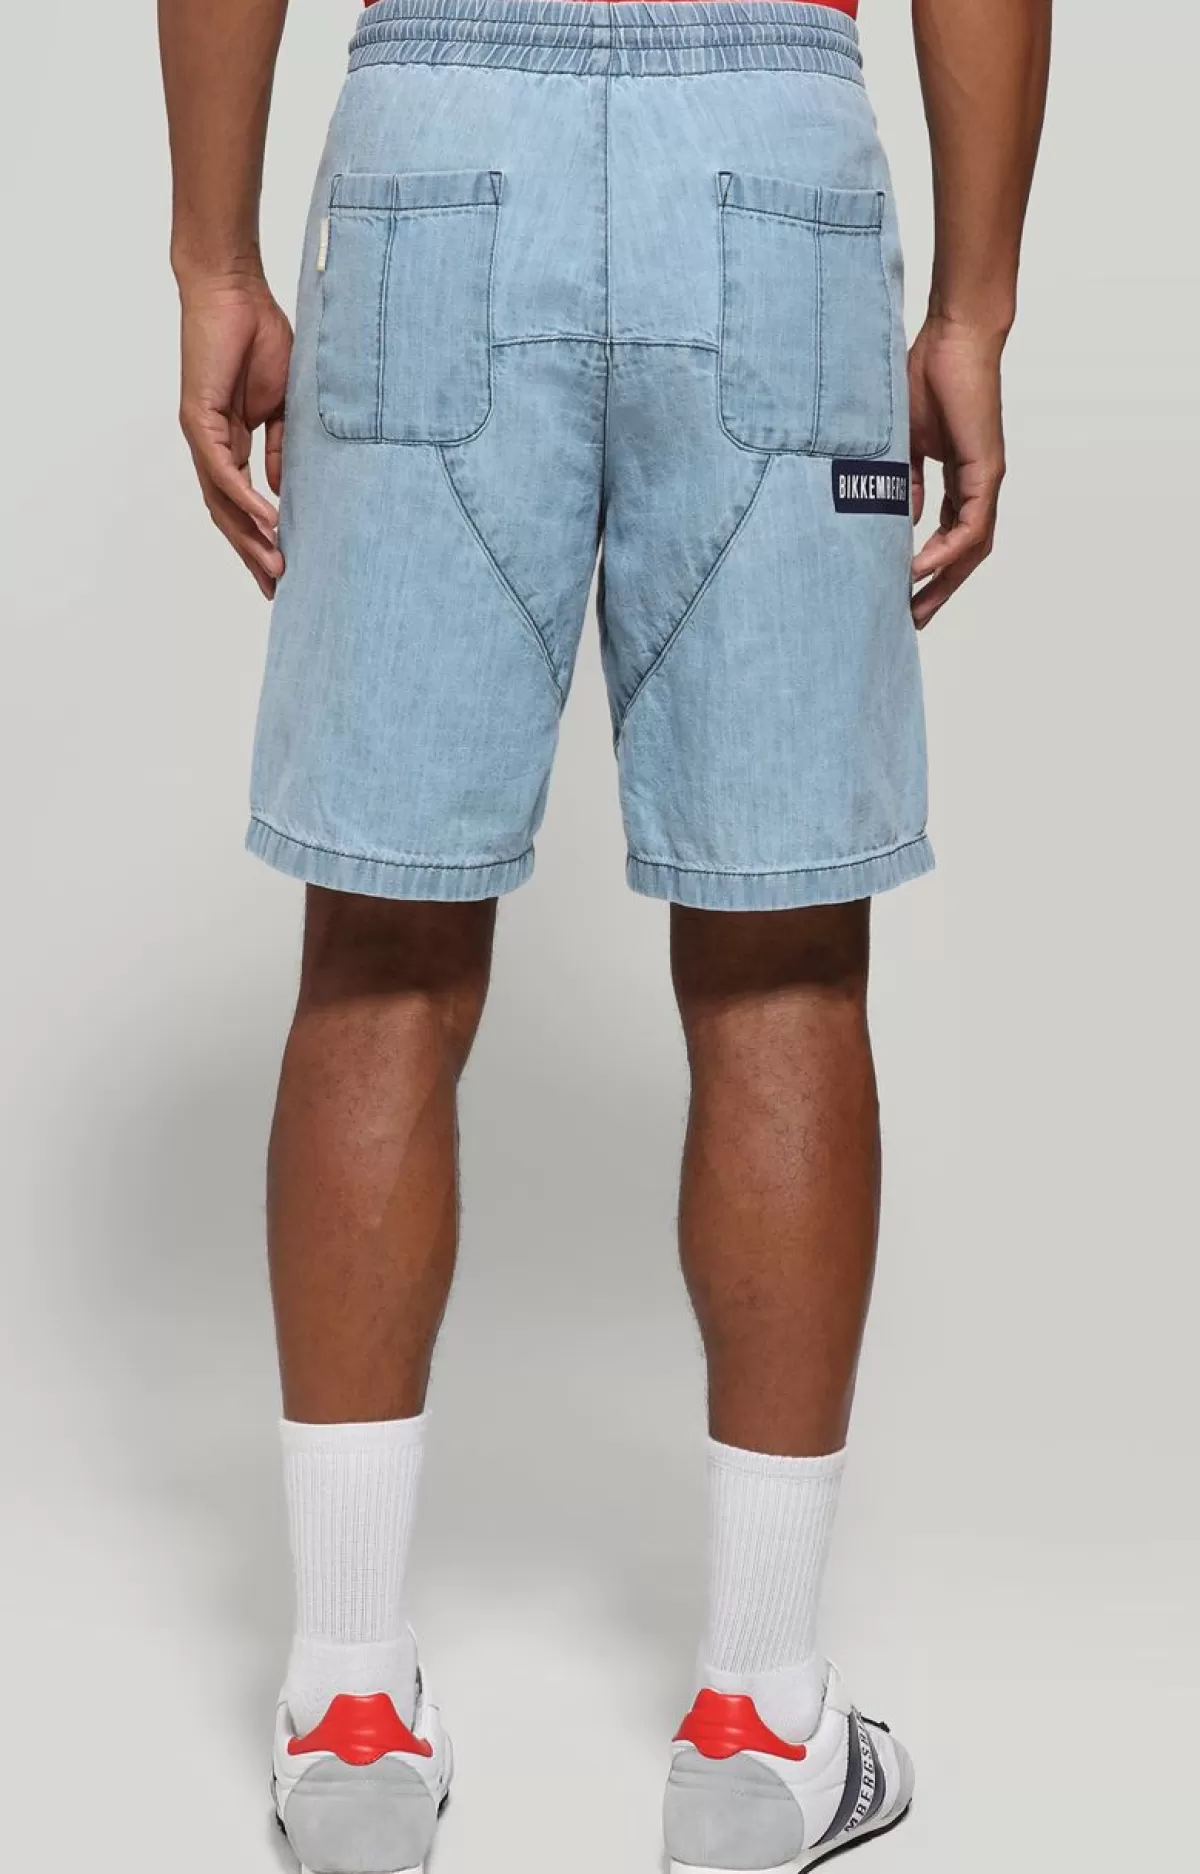 Bikkembergs Men'S Denim Shorts Blue Denim Cheap